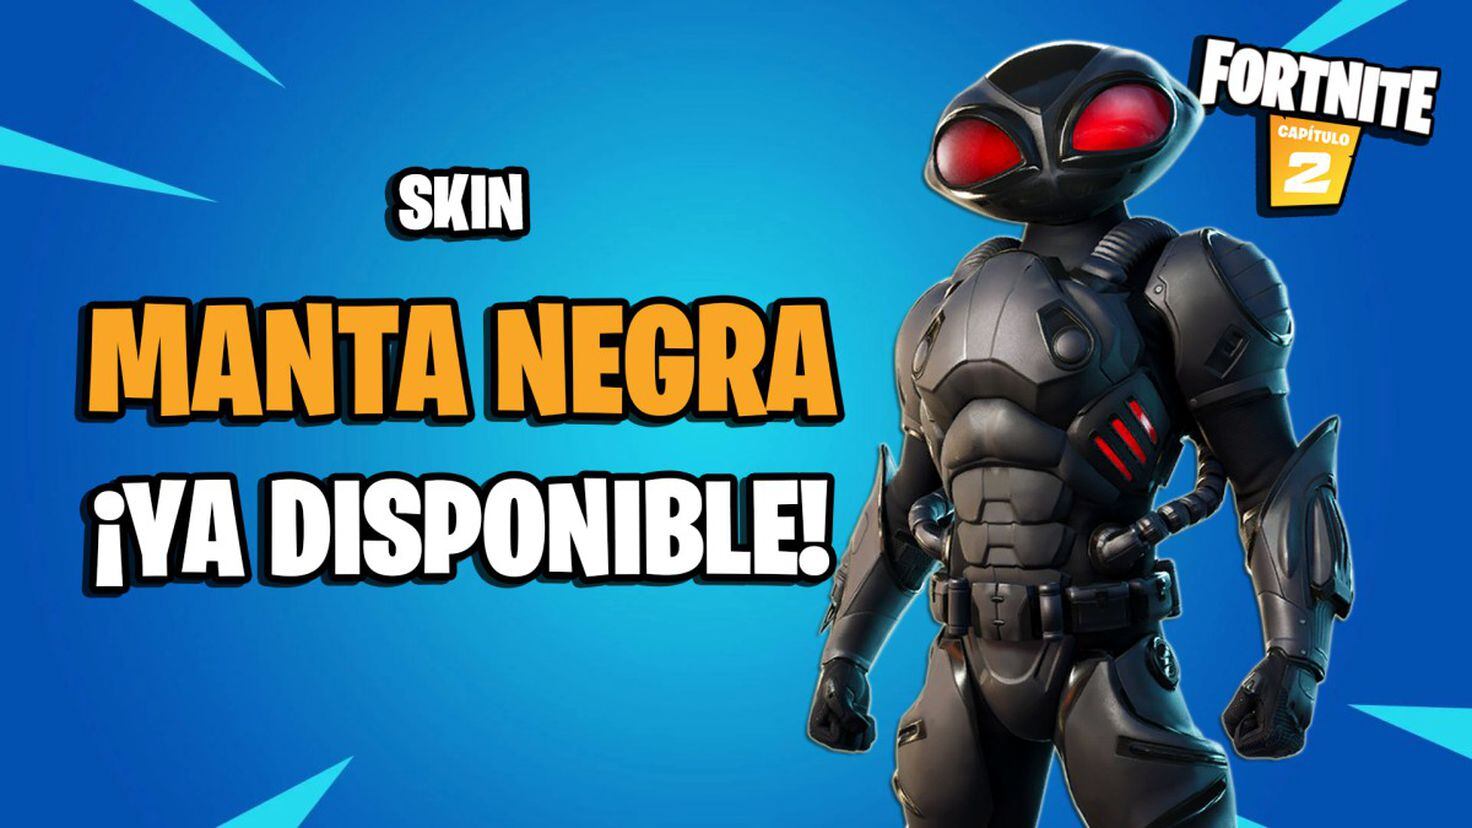 Fortnite: skin Manta Negra ya disponible; precio y contenidos - Meristation